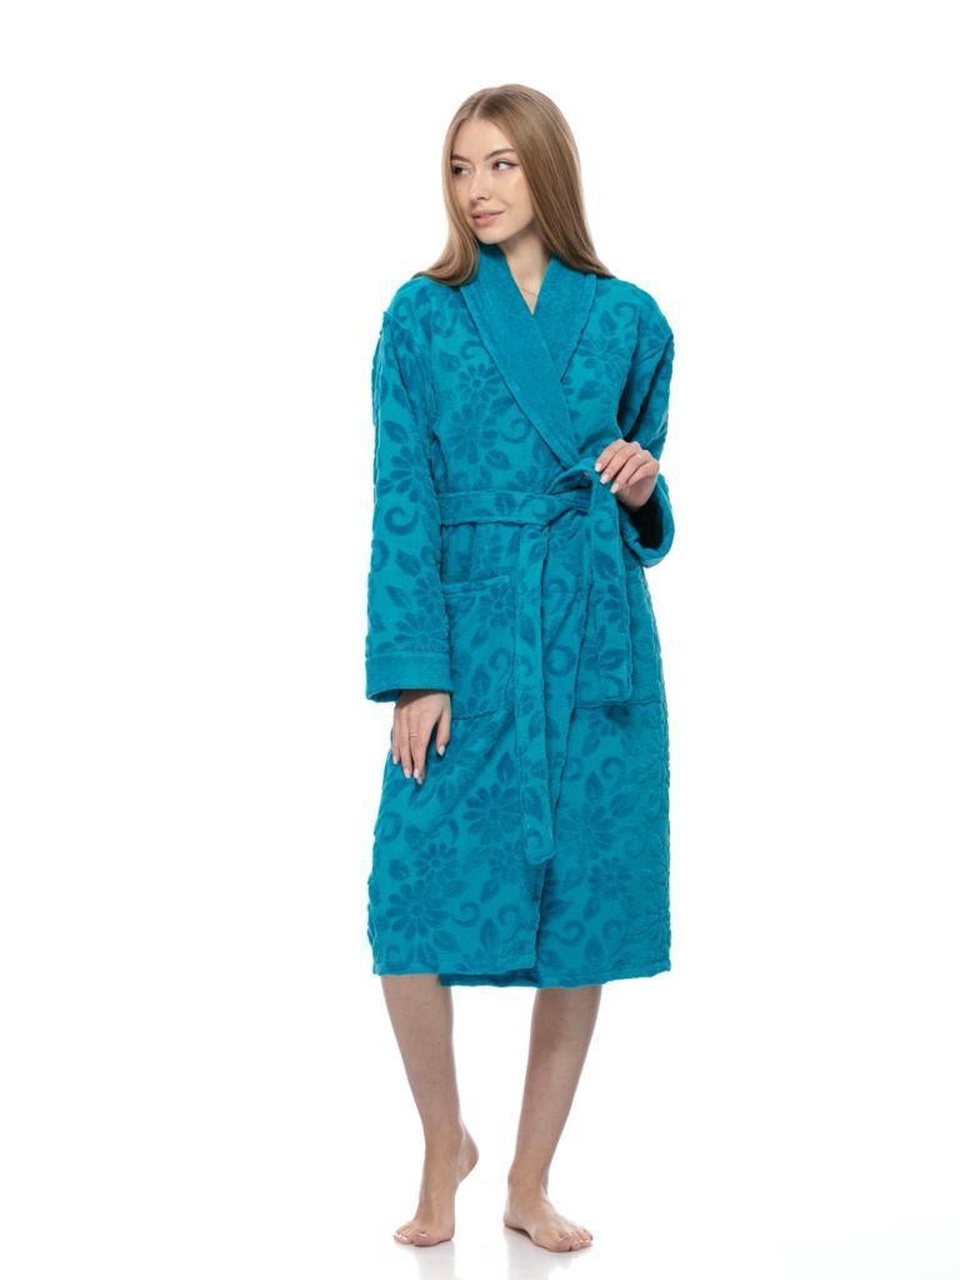 Халаты женские жаккардовый .Турция - 2 300 ₽, заказать онлайн.